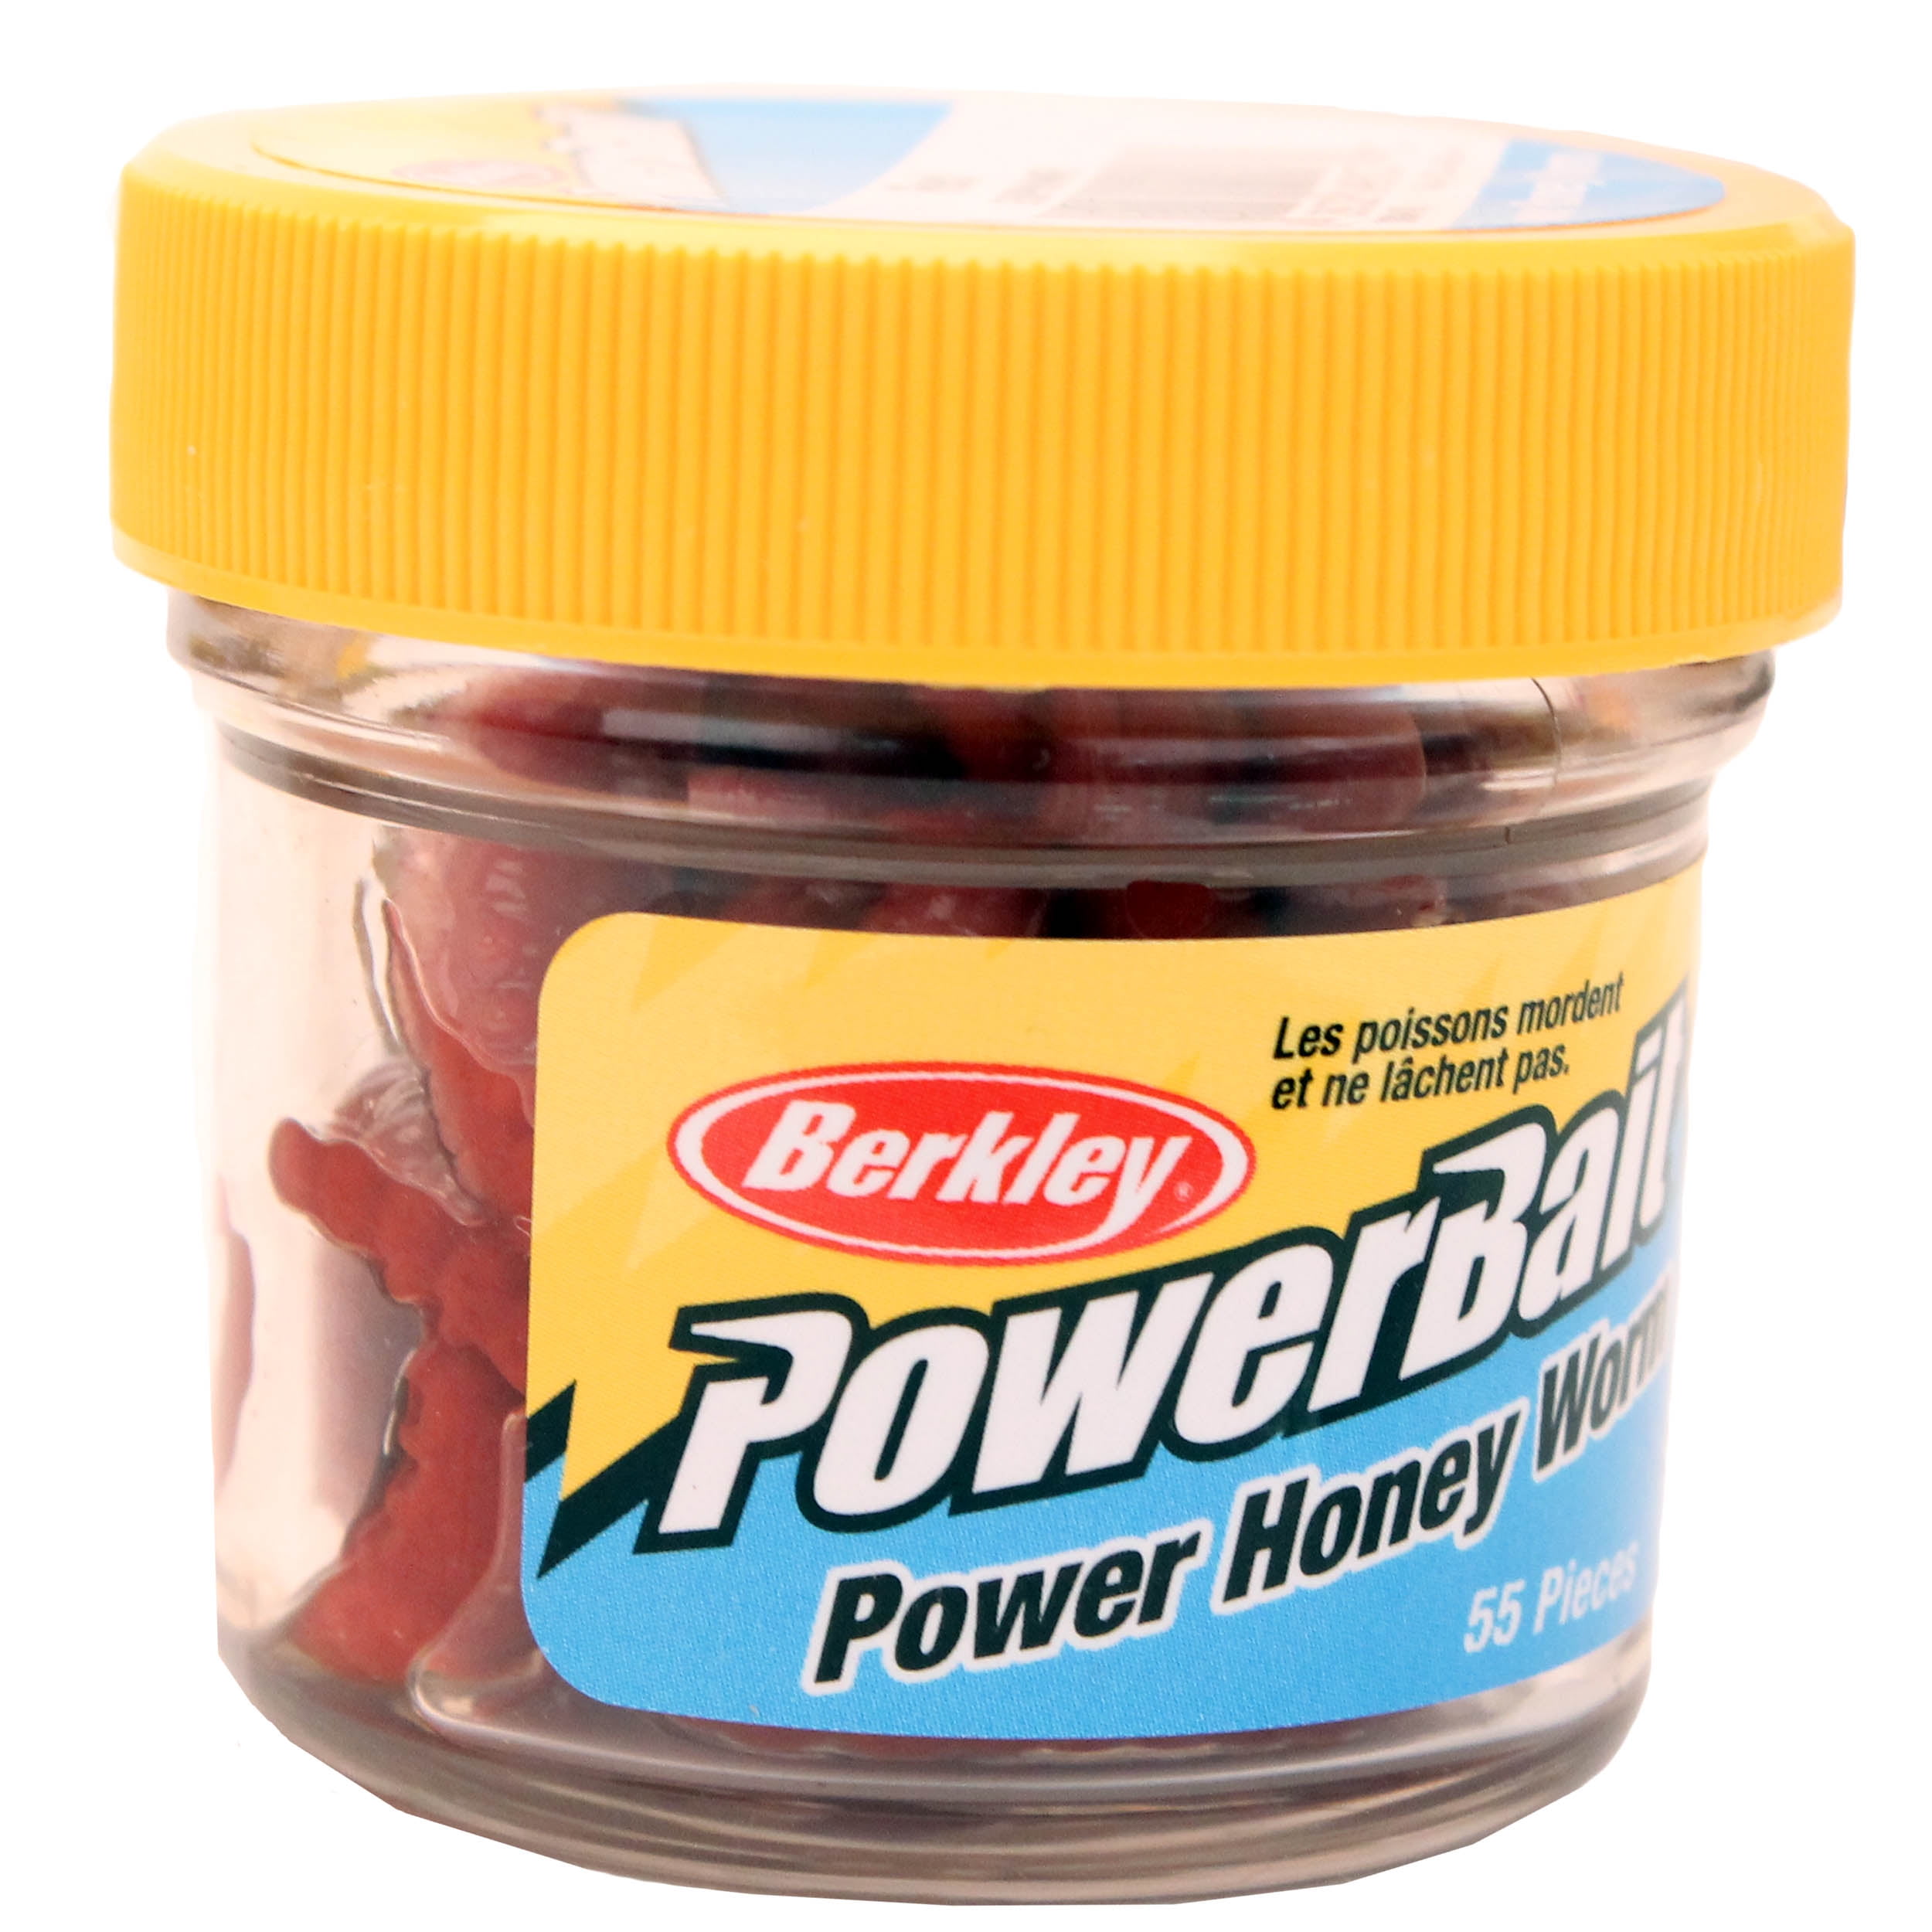 Berkley 1089417 PowerBait Power Honey Worm Natural Fishing Lure 